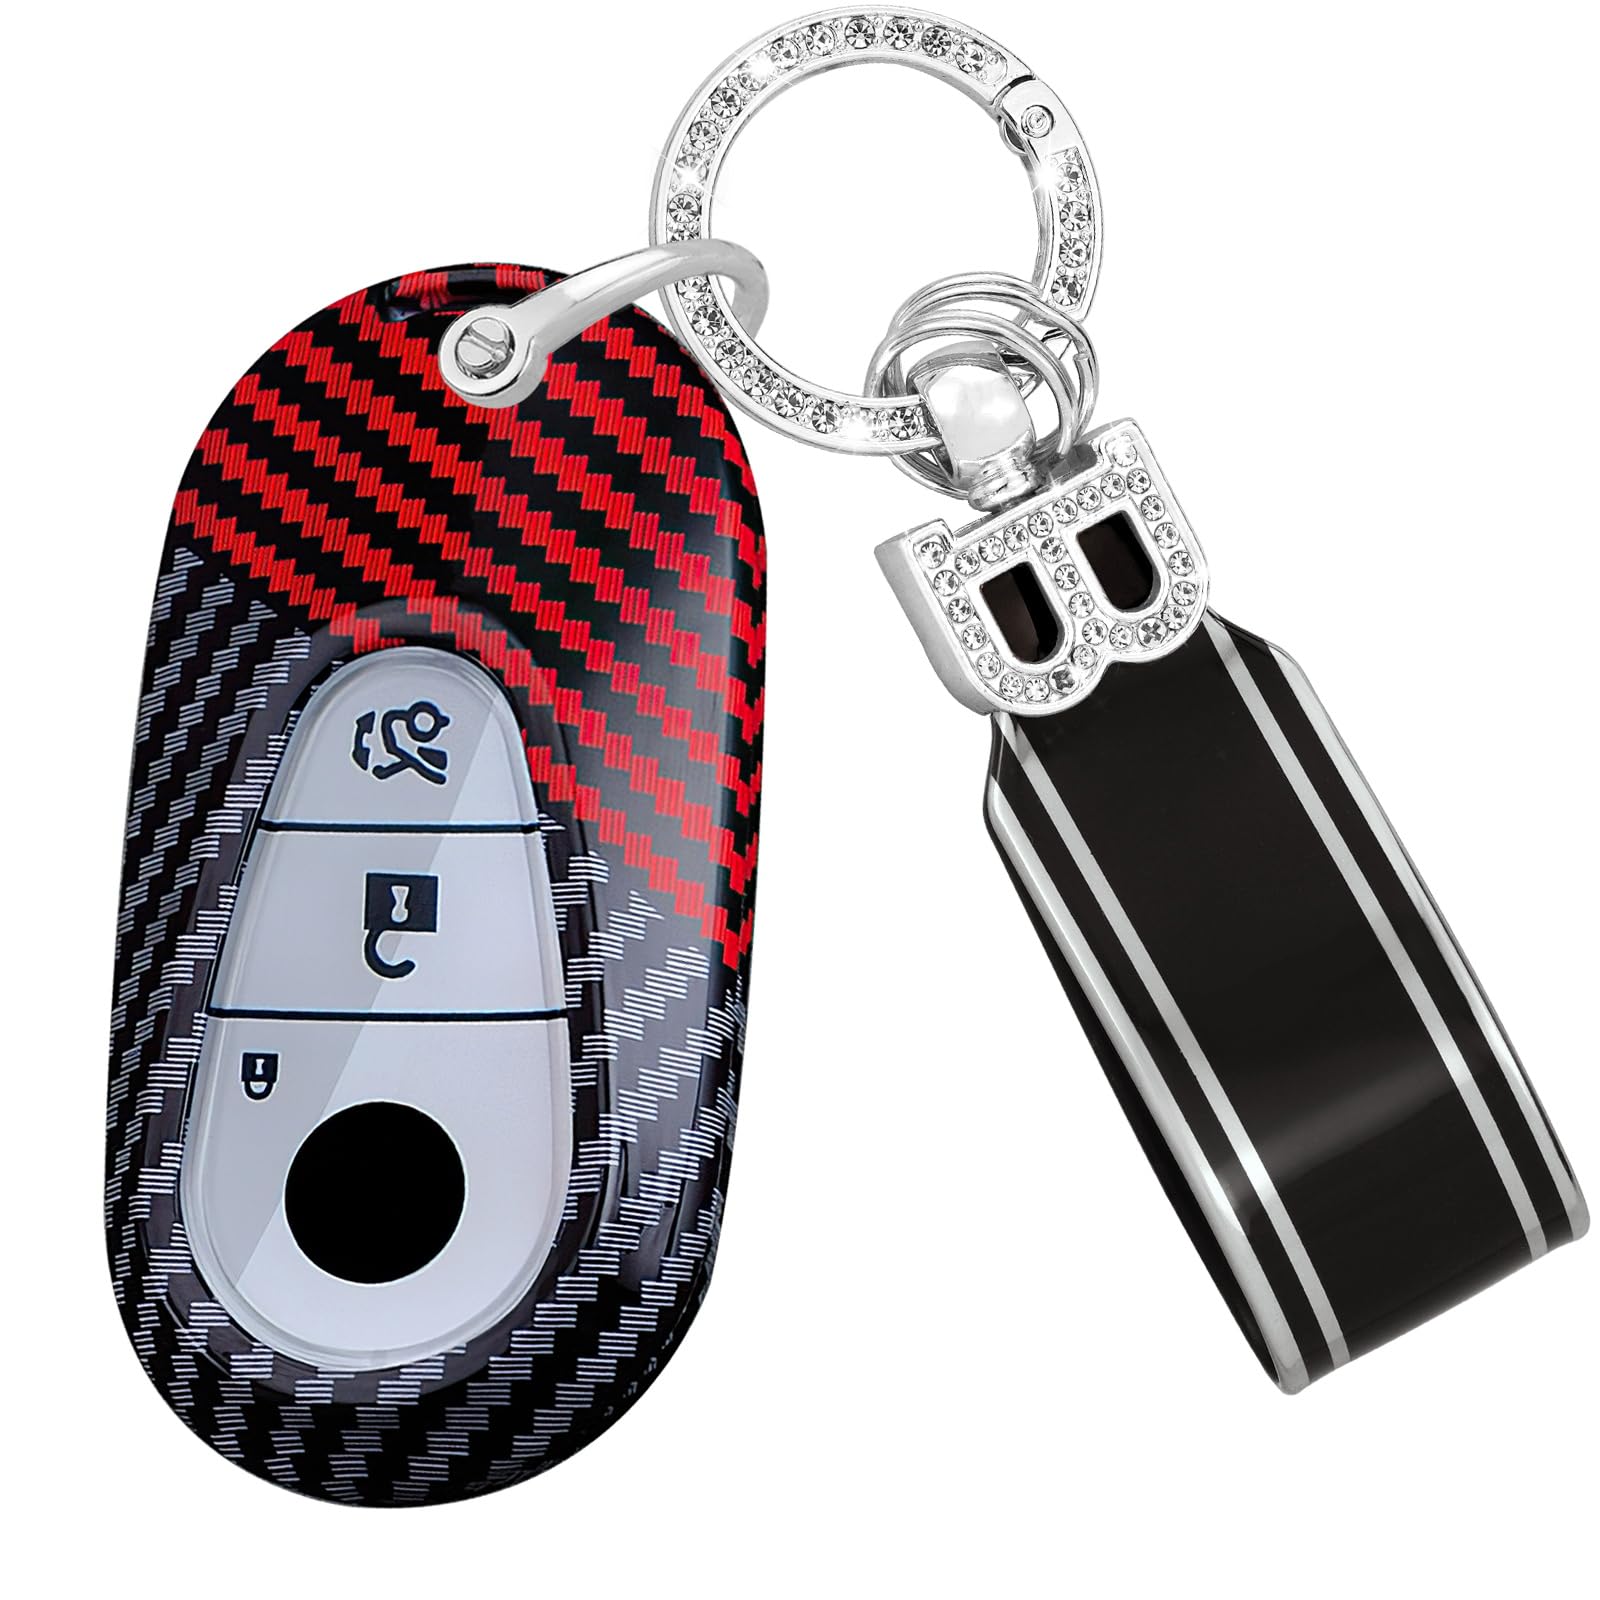 TECART Fernsteuerung Schlüsselhülle Schlüsselschutz Passt für Mercedes Benz S W223 S300 S350 S400 S450 S500 C200 C260 W206 Schlüsseltasche PC Schutzhülle Schlüsselanhänger 3 Tasten A-Schwarz Rot von TECART